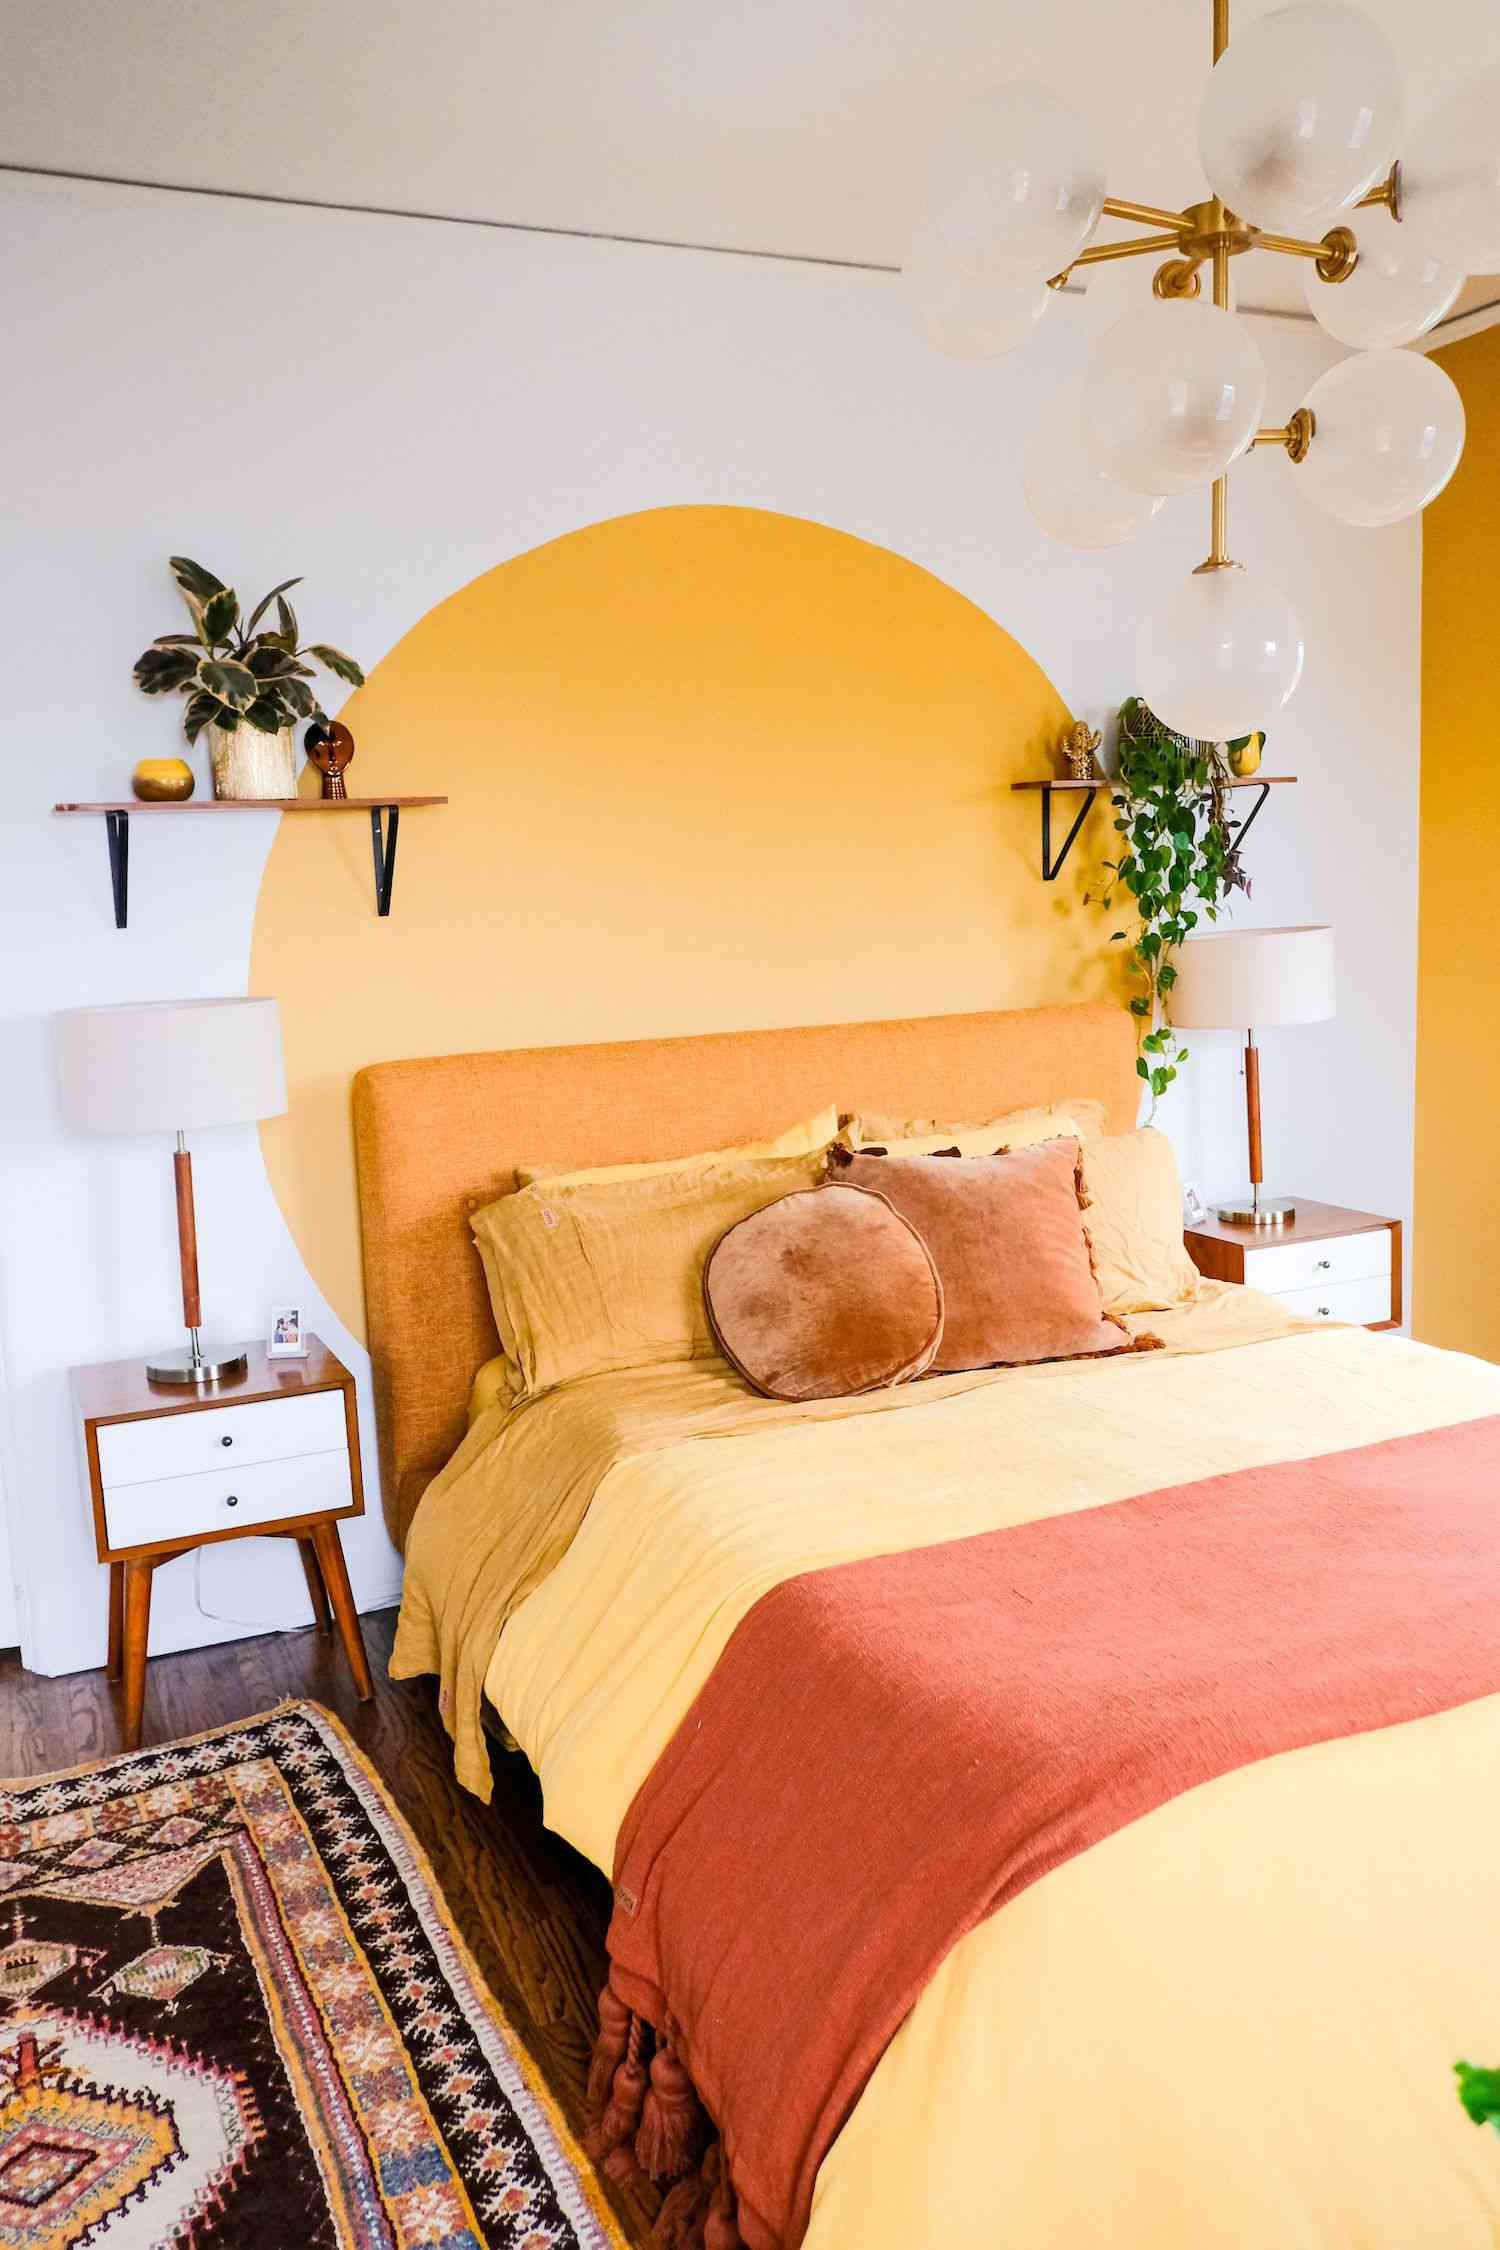 Schlafzimmer mit gelbem Wandbild auf weißer Wand, gelbe Bettwäsche, schwebendes Regal mit Pflanzen